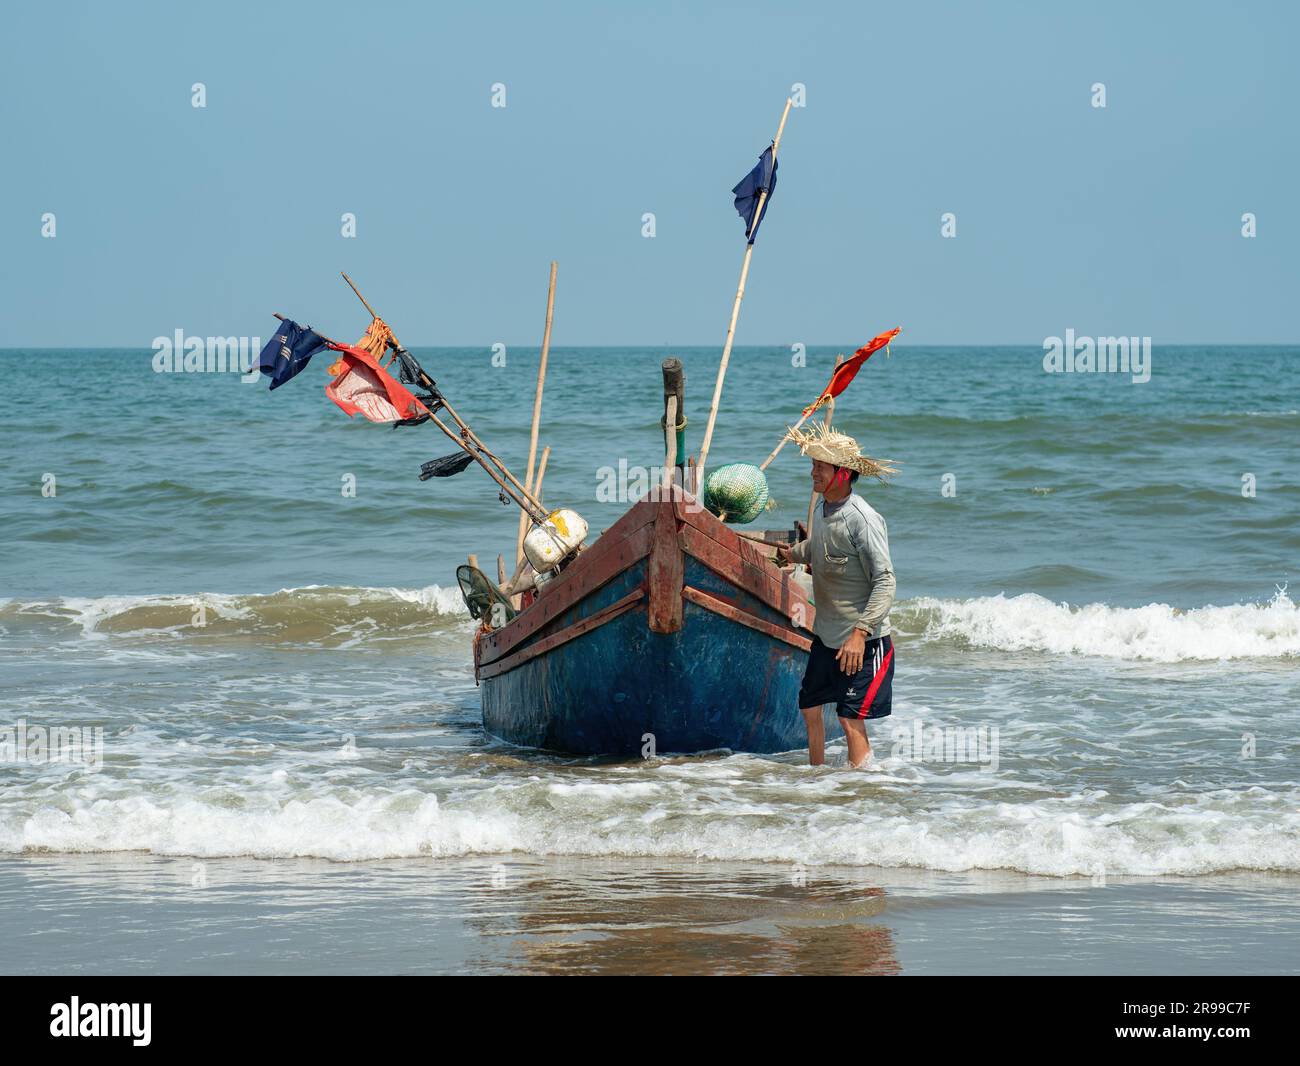 Pêcheur vietnamien se préparant à transporter son bateau de pêche sur la plage de Sam son, province de Thanh Hoa du Vietnam. Banque D'Images